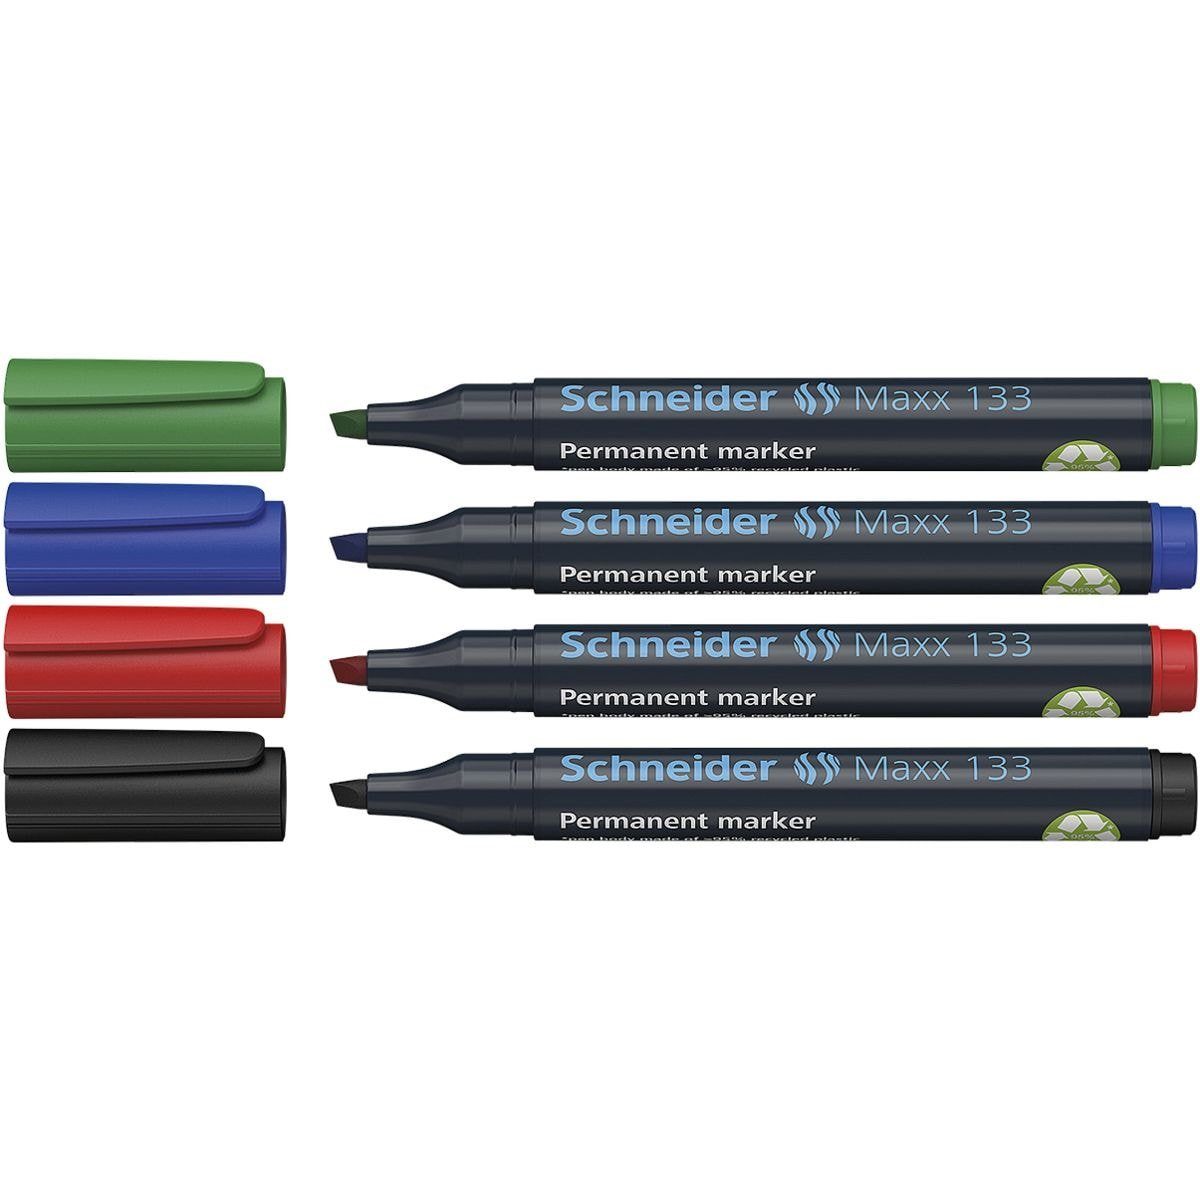 Schneider Permanentmarker Maxx 133, (4-tlg), toluolfrei, Strichstärke: 1,0 - 4,0 mm grün, blau, rot, schwarz